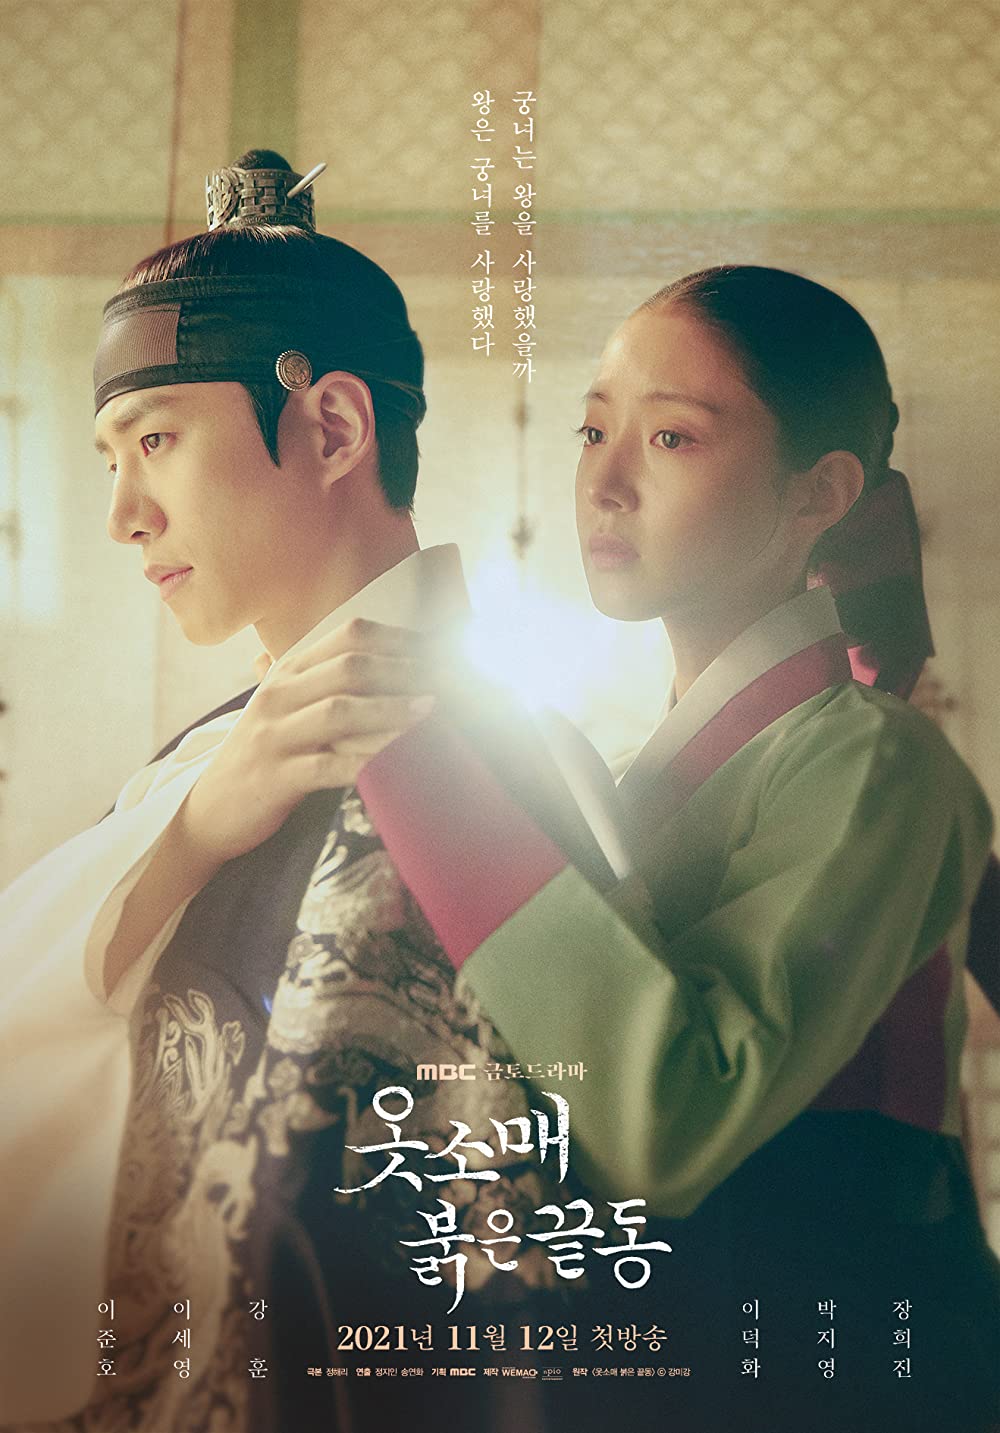 11 Fakta menarik drama Korea The Red Sleeve, raih penonton terbanyak